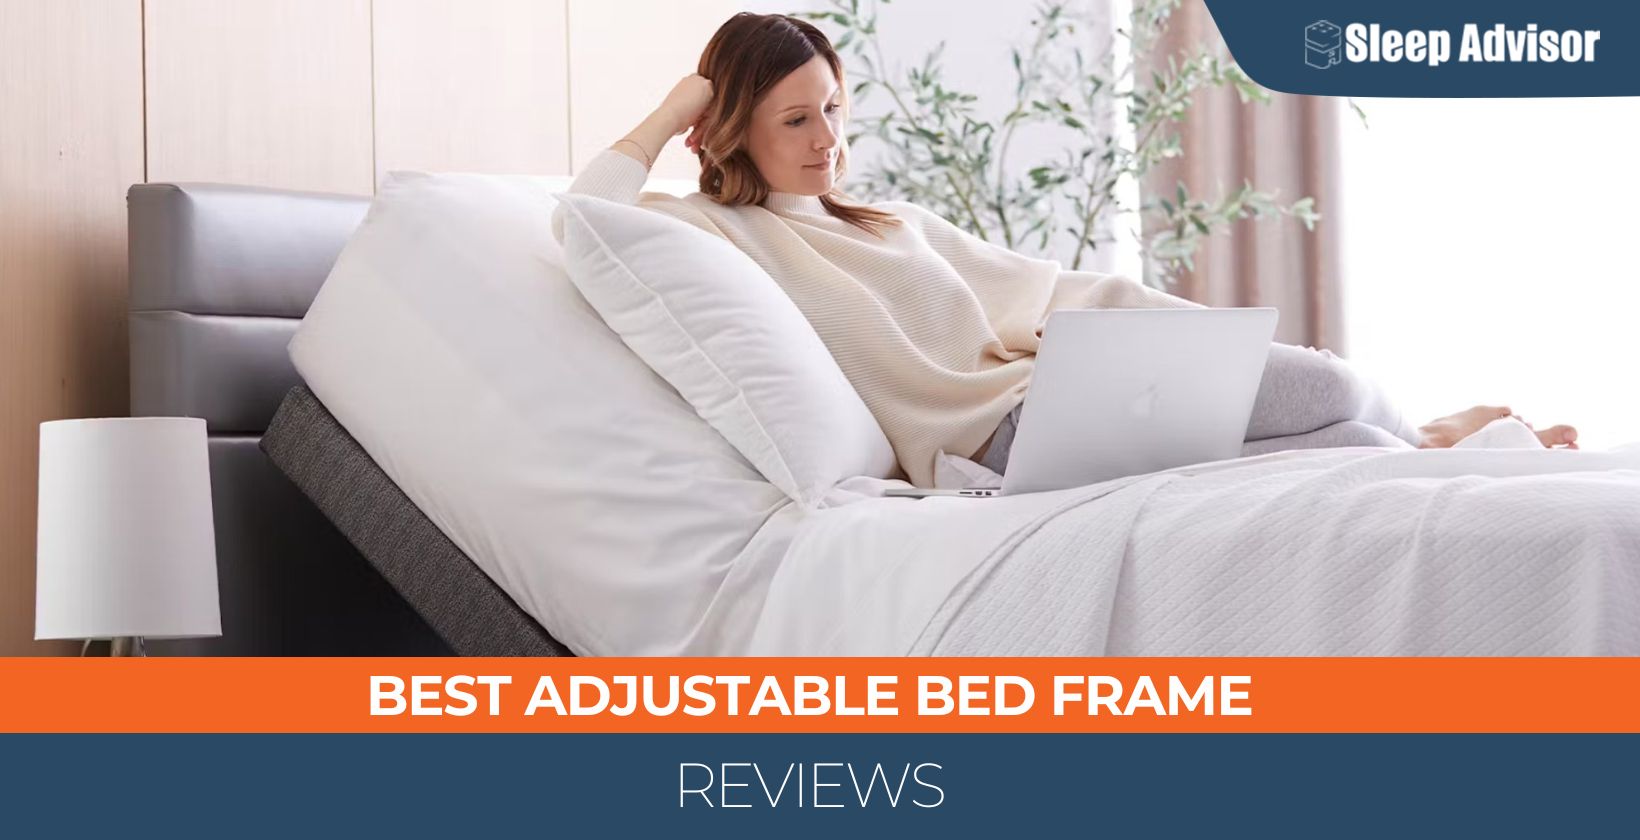 Best Adjustable Bed Frame Reviews - Top 6 Picks